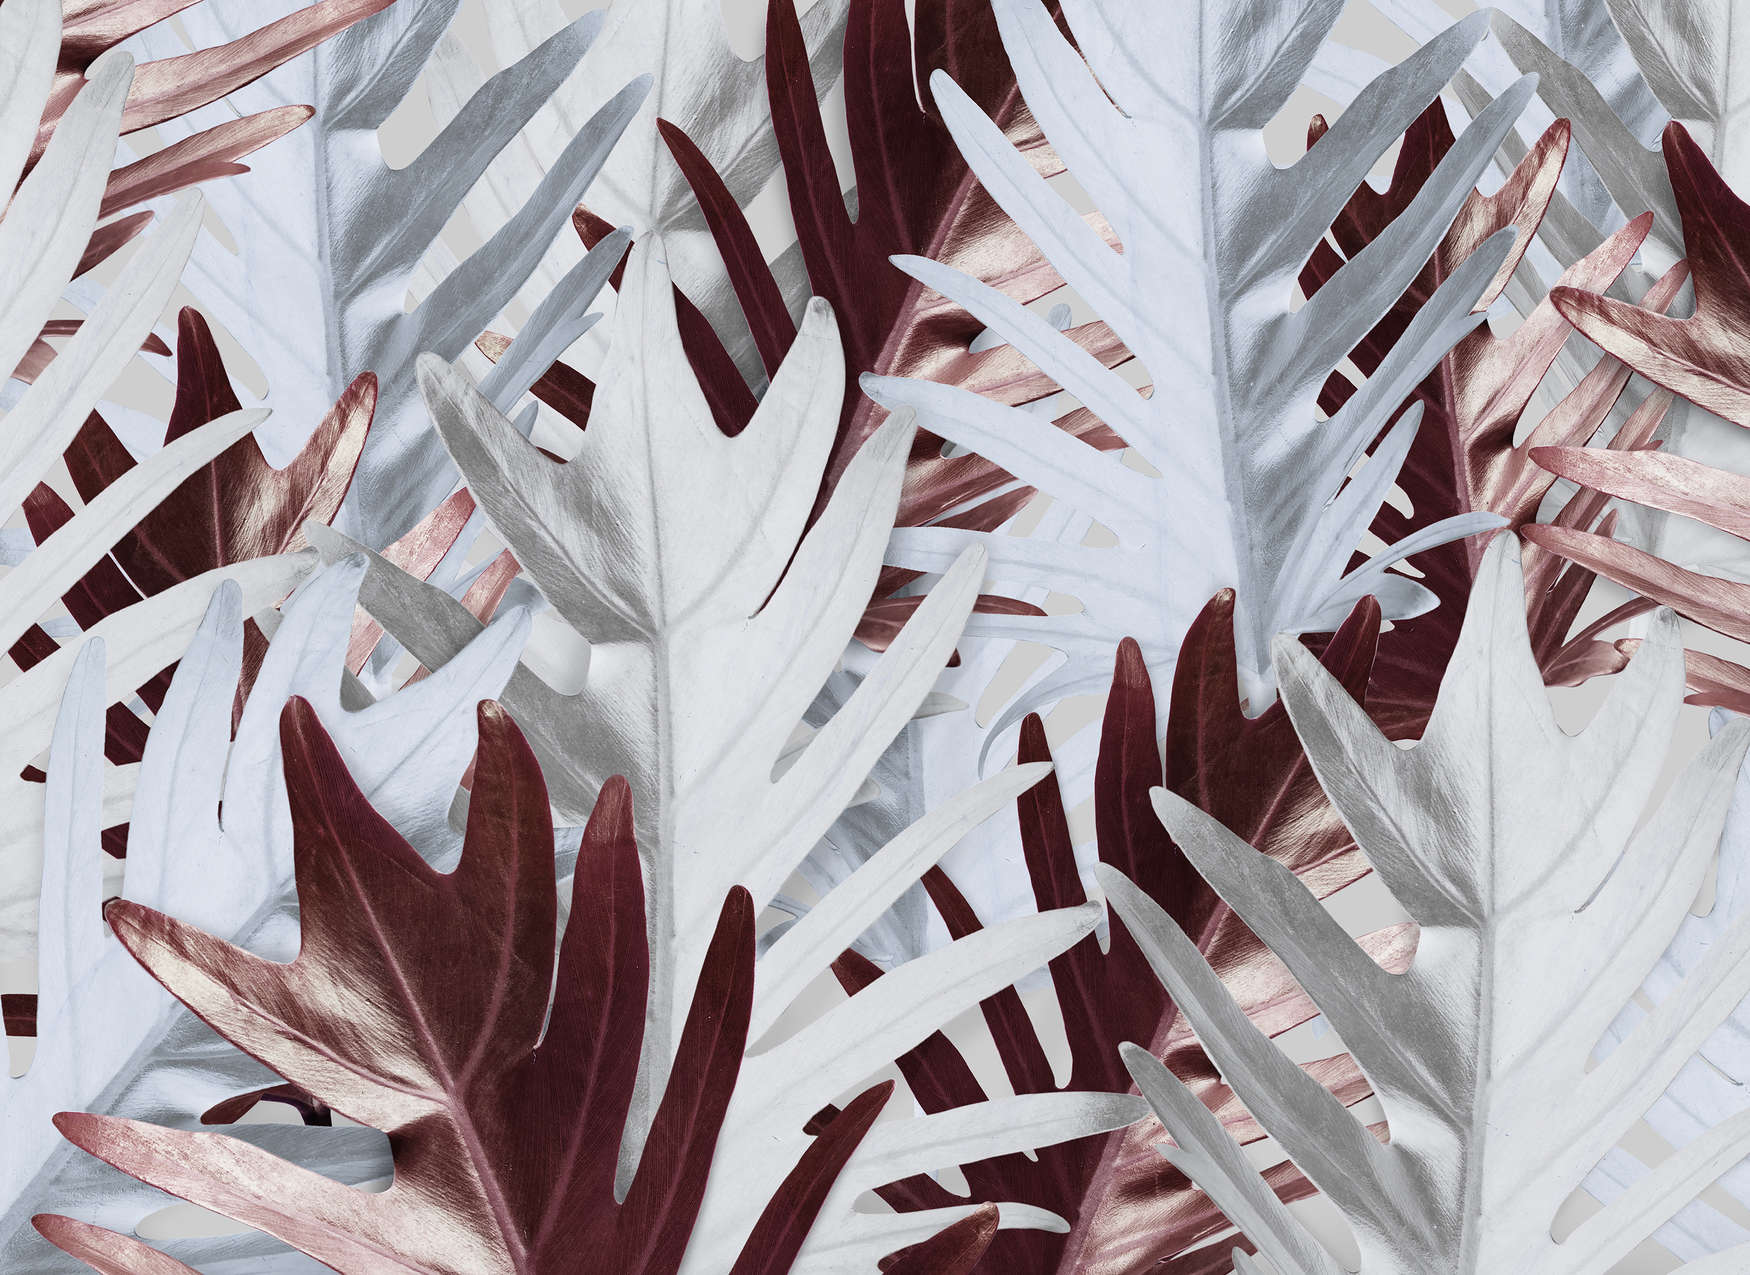             Digital behang met junglebladeren in zachte tinten - Rood, Wit
        